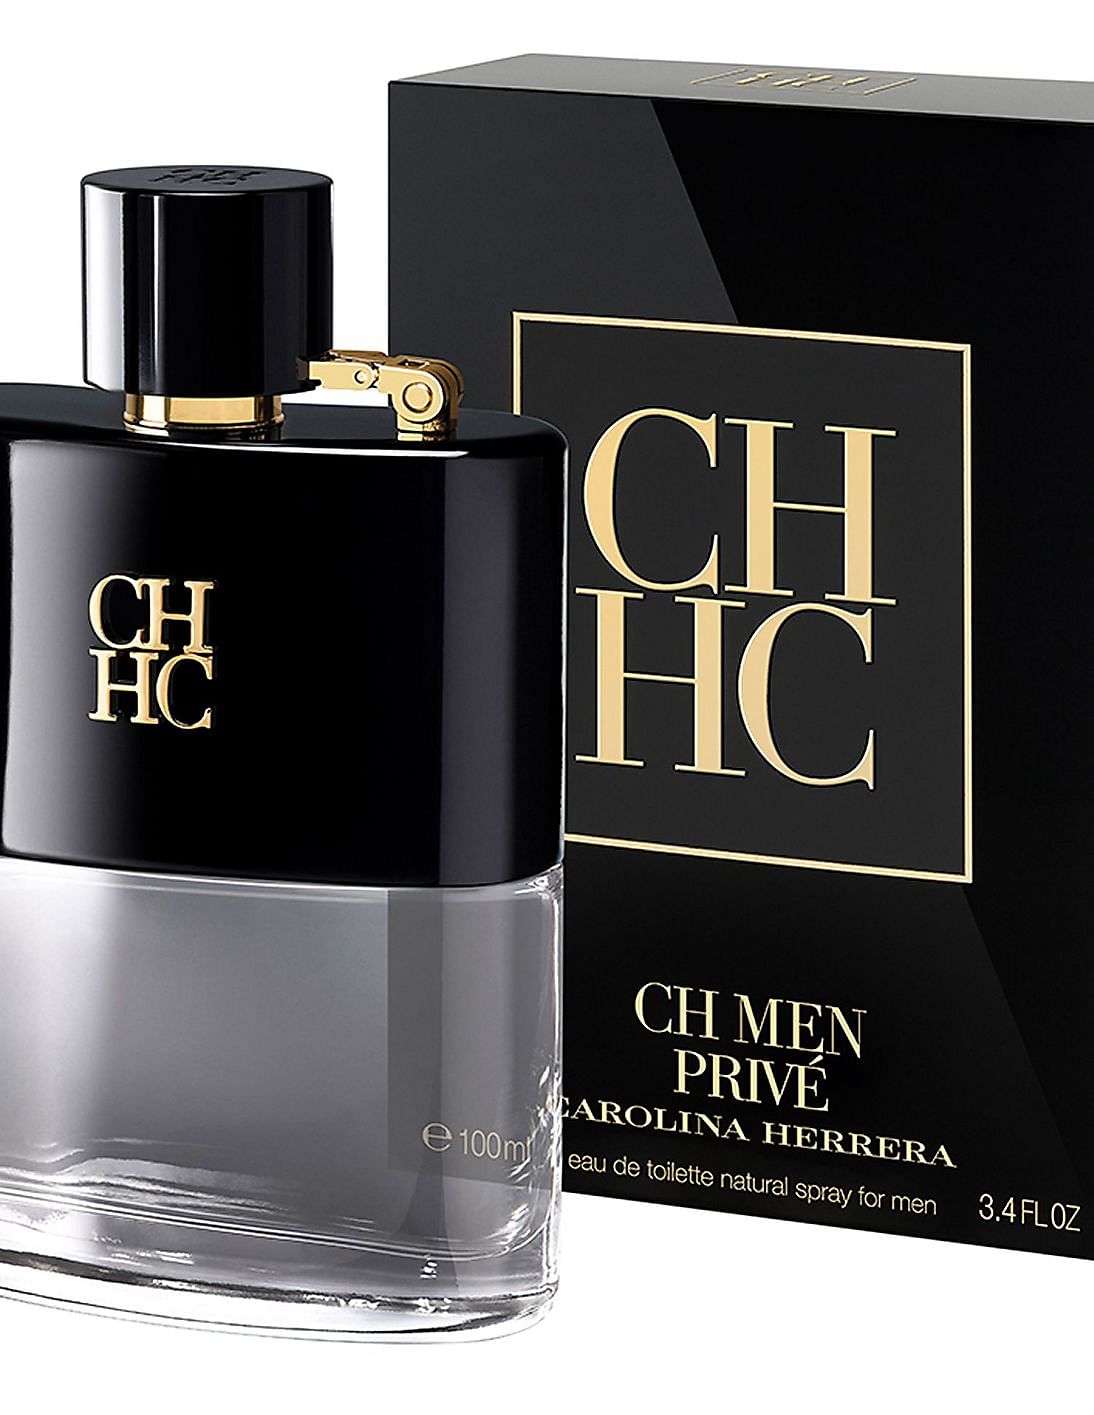 Buy Carolina Herrera Bad Boy Eau De Parfum - NNNOW.com